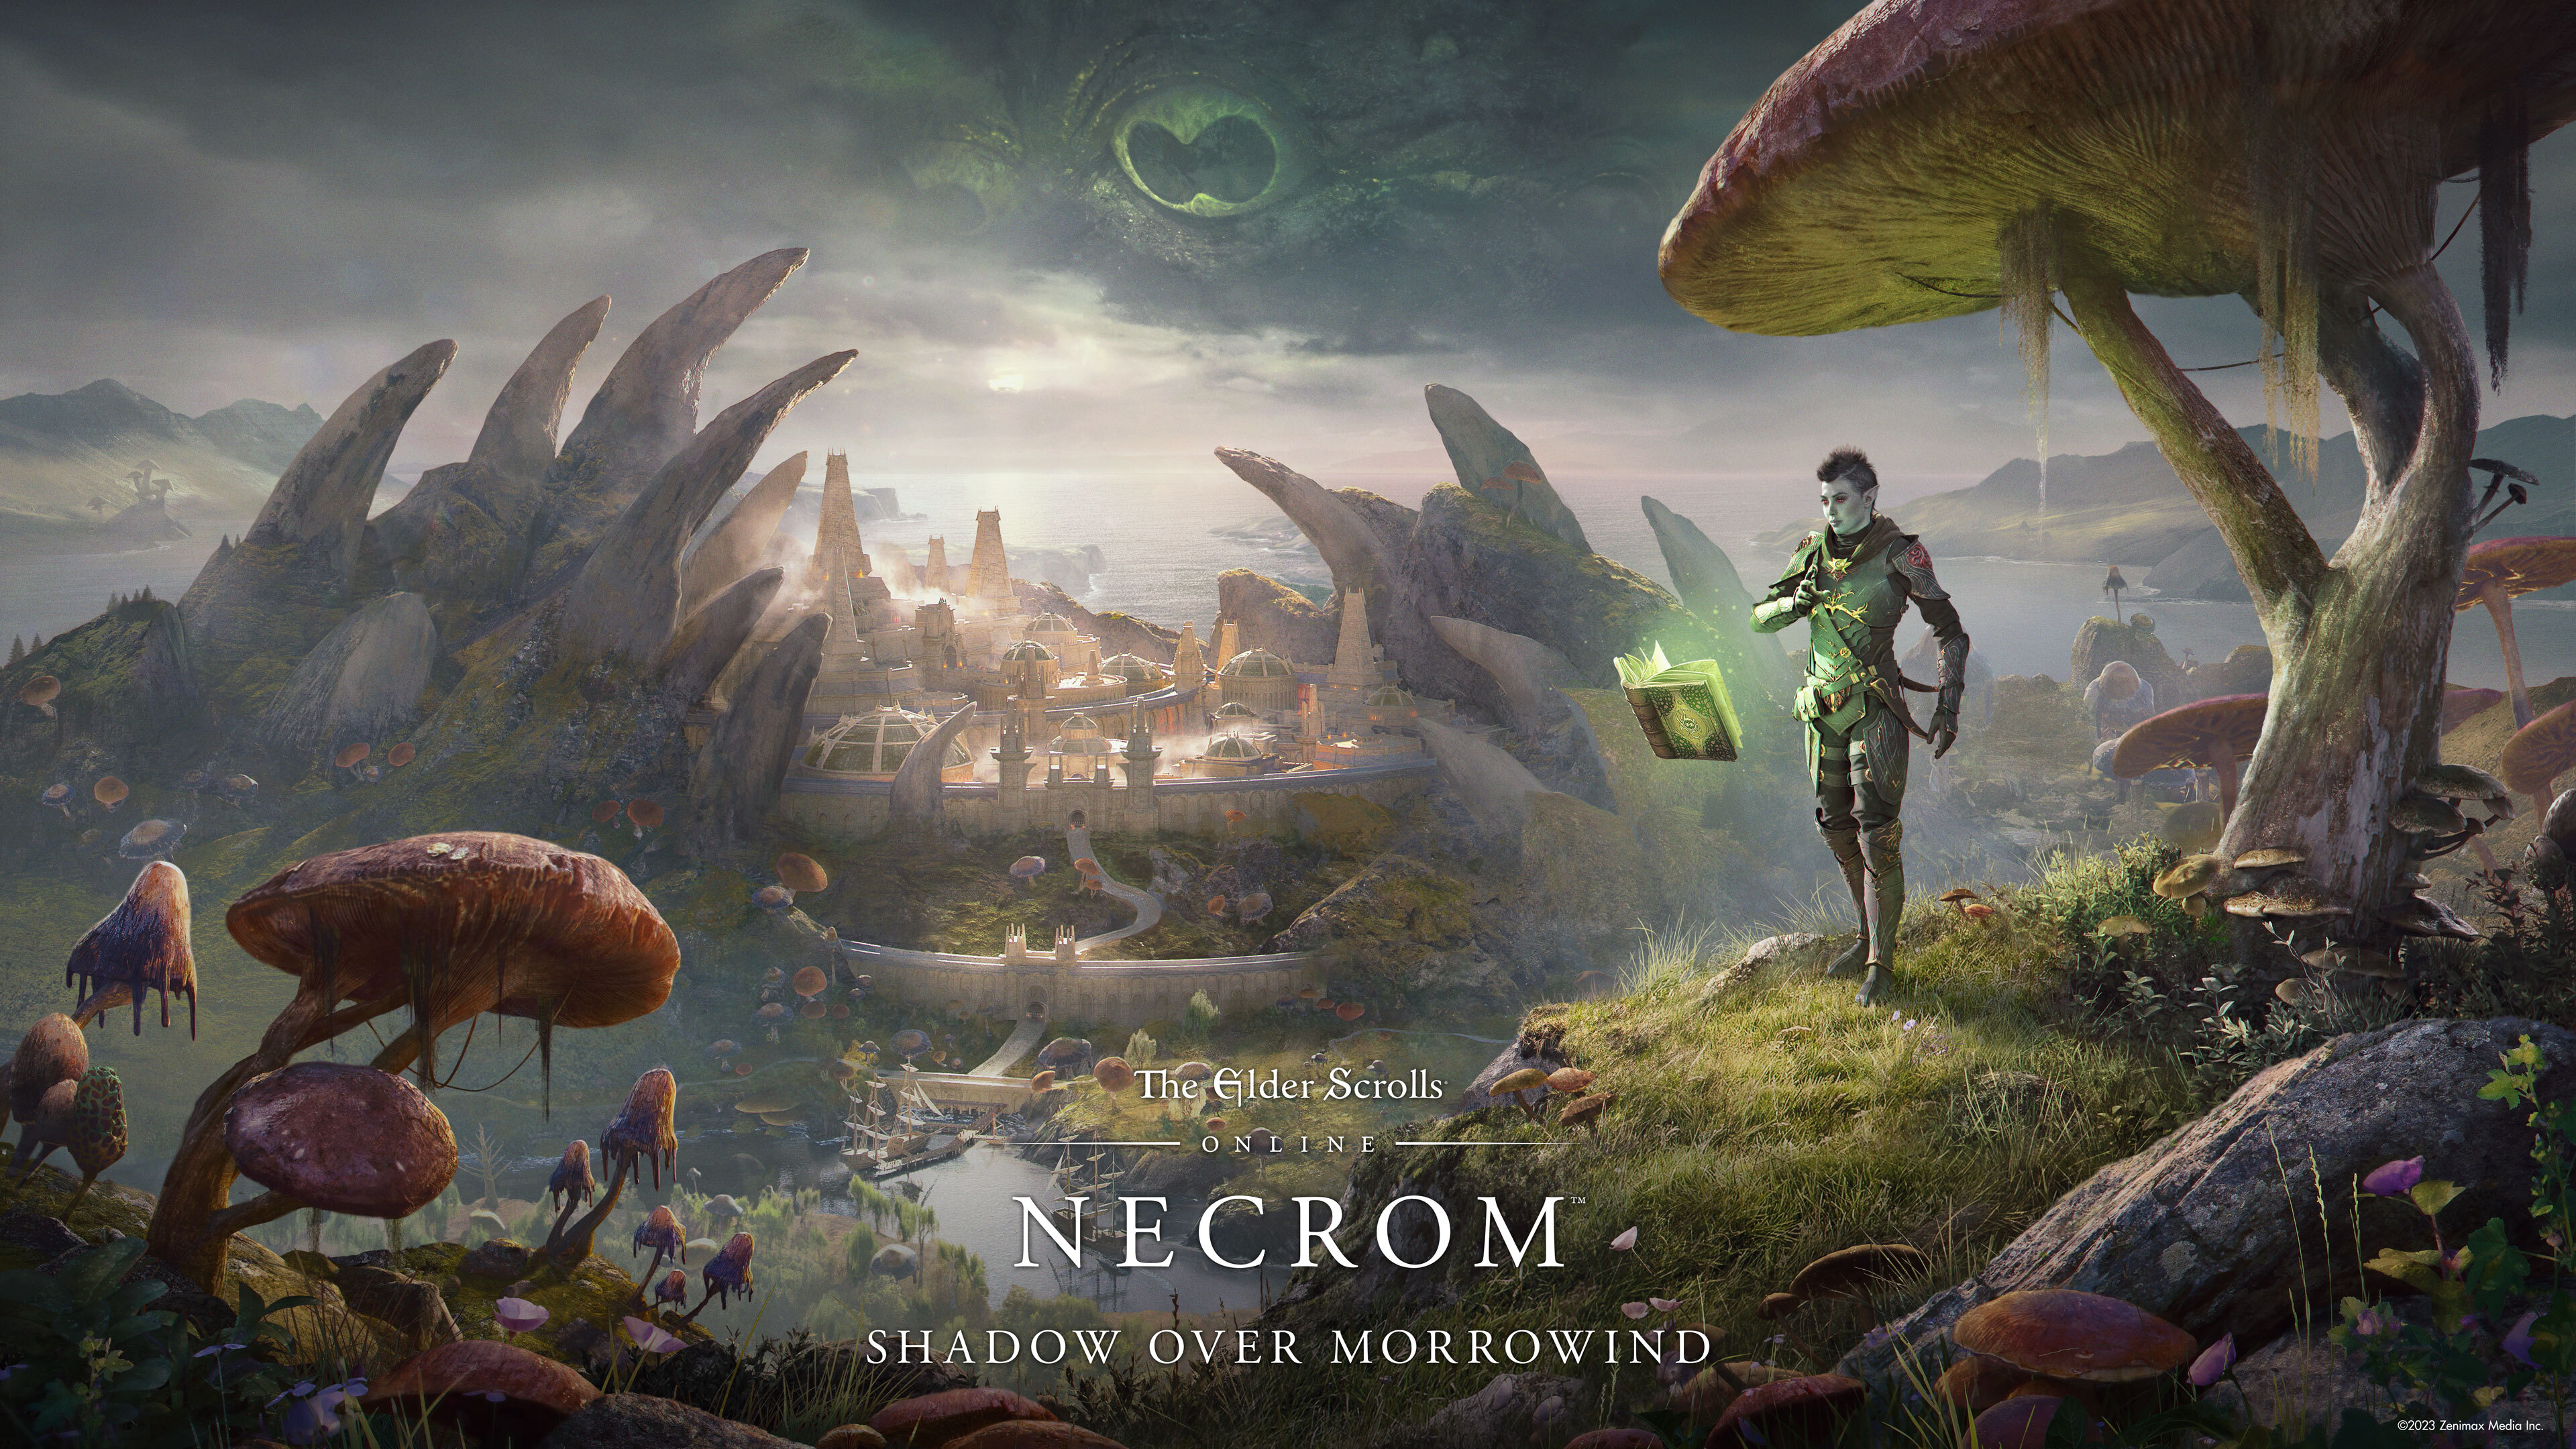 The Elder Scrolls Online (ESO) - Necrom